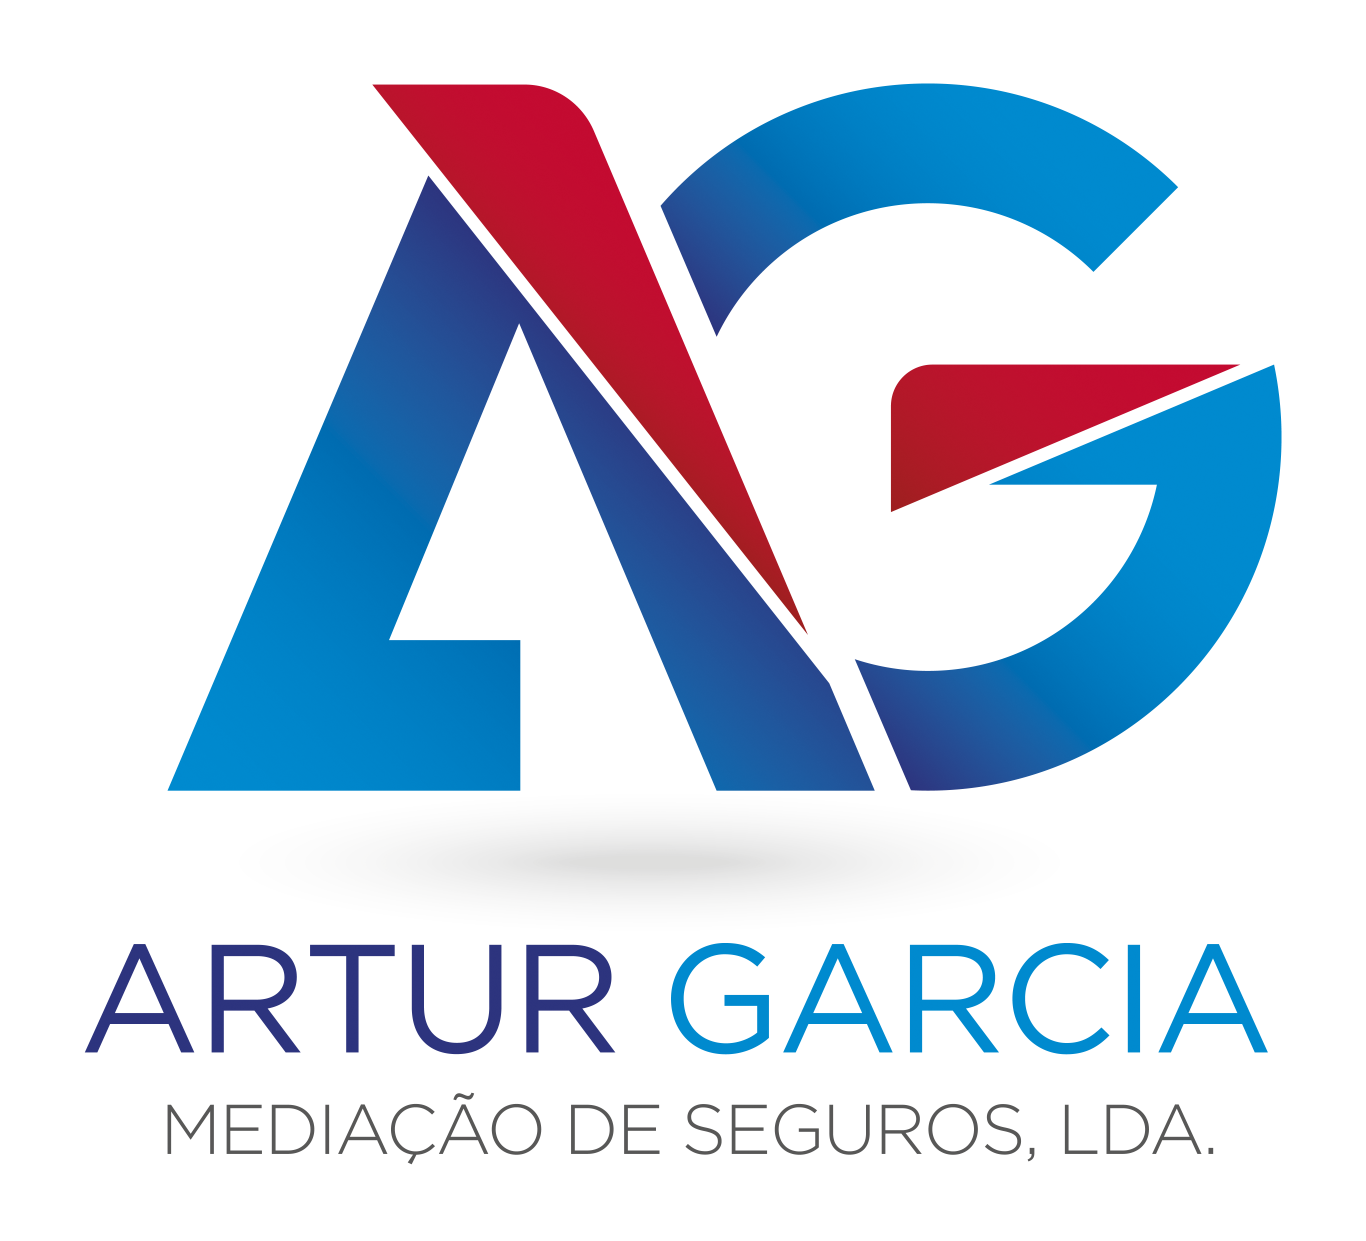 Artur Garcia Mediação de Seguros, Lda